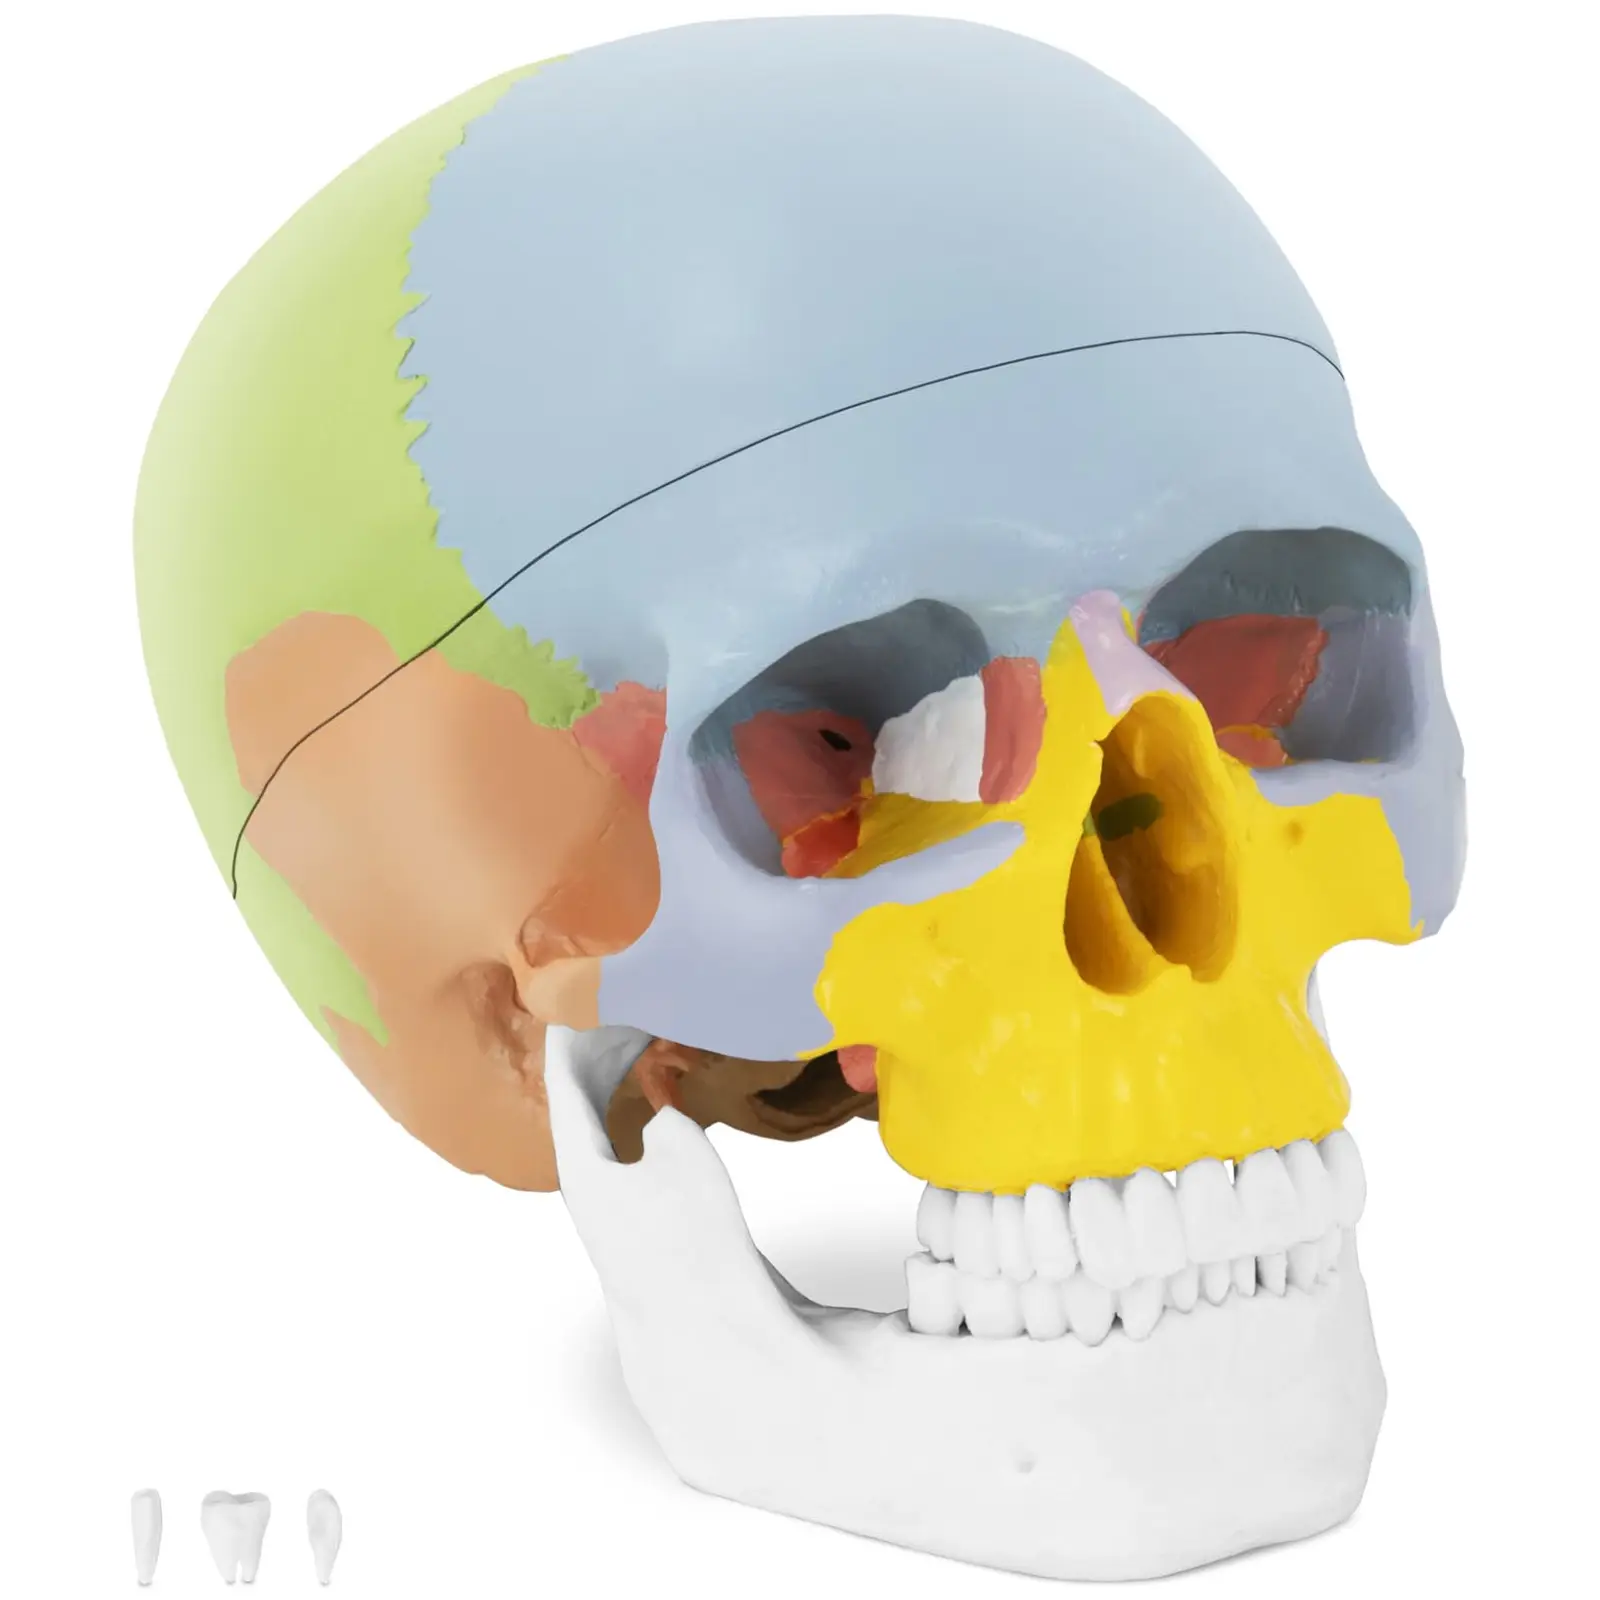 Skull Model - colourful